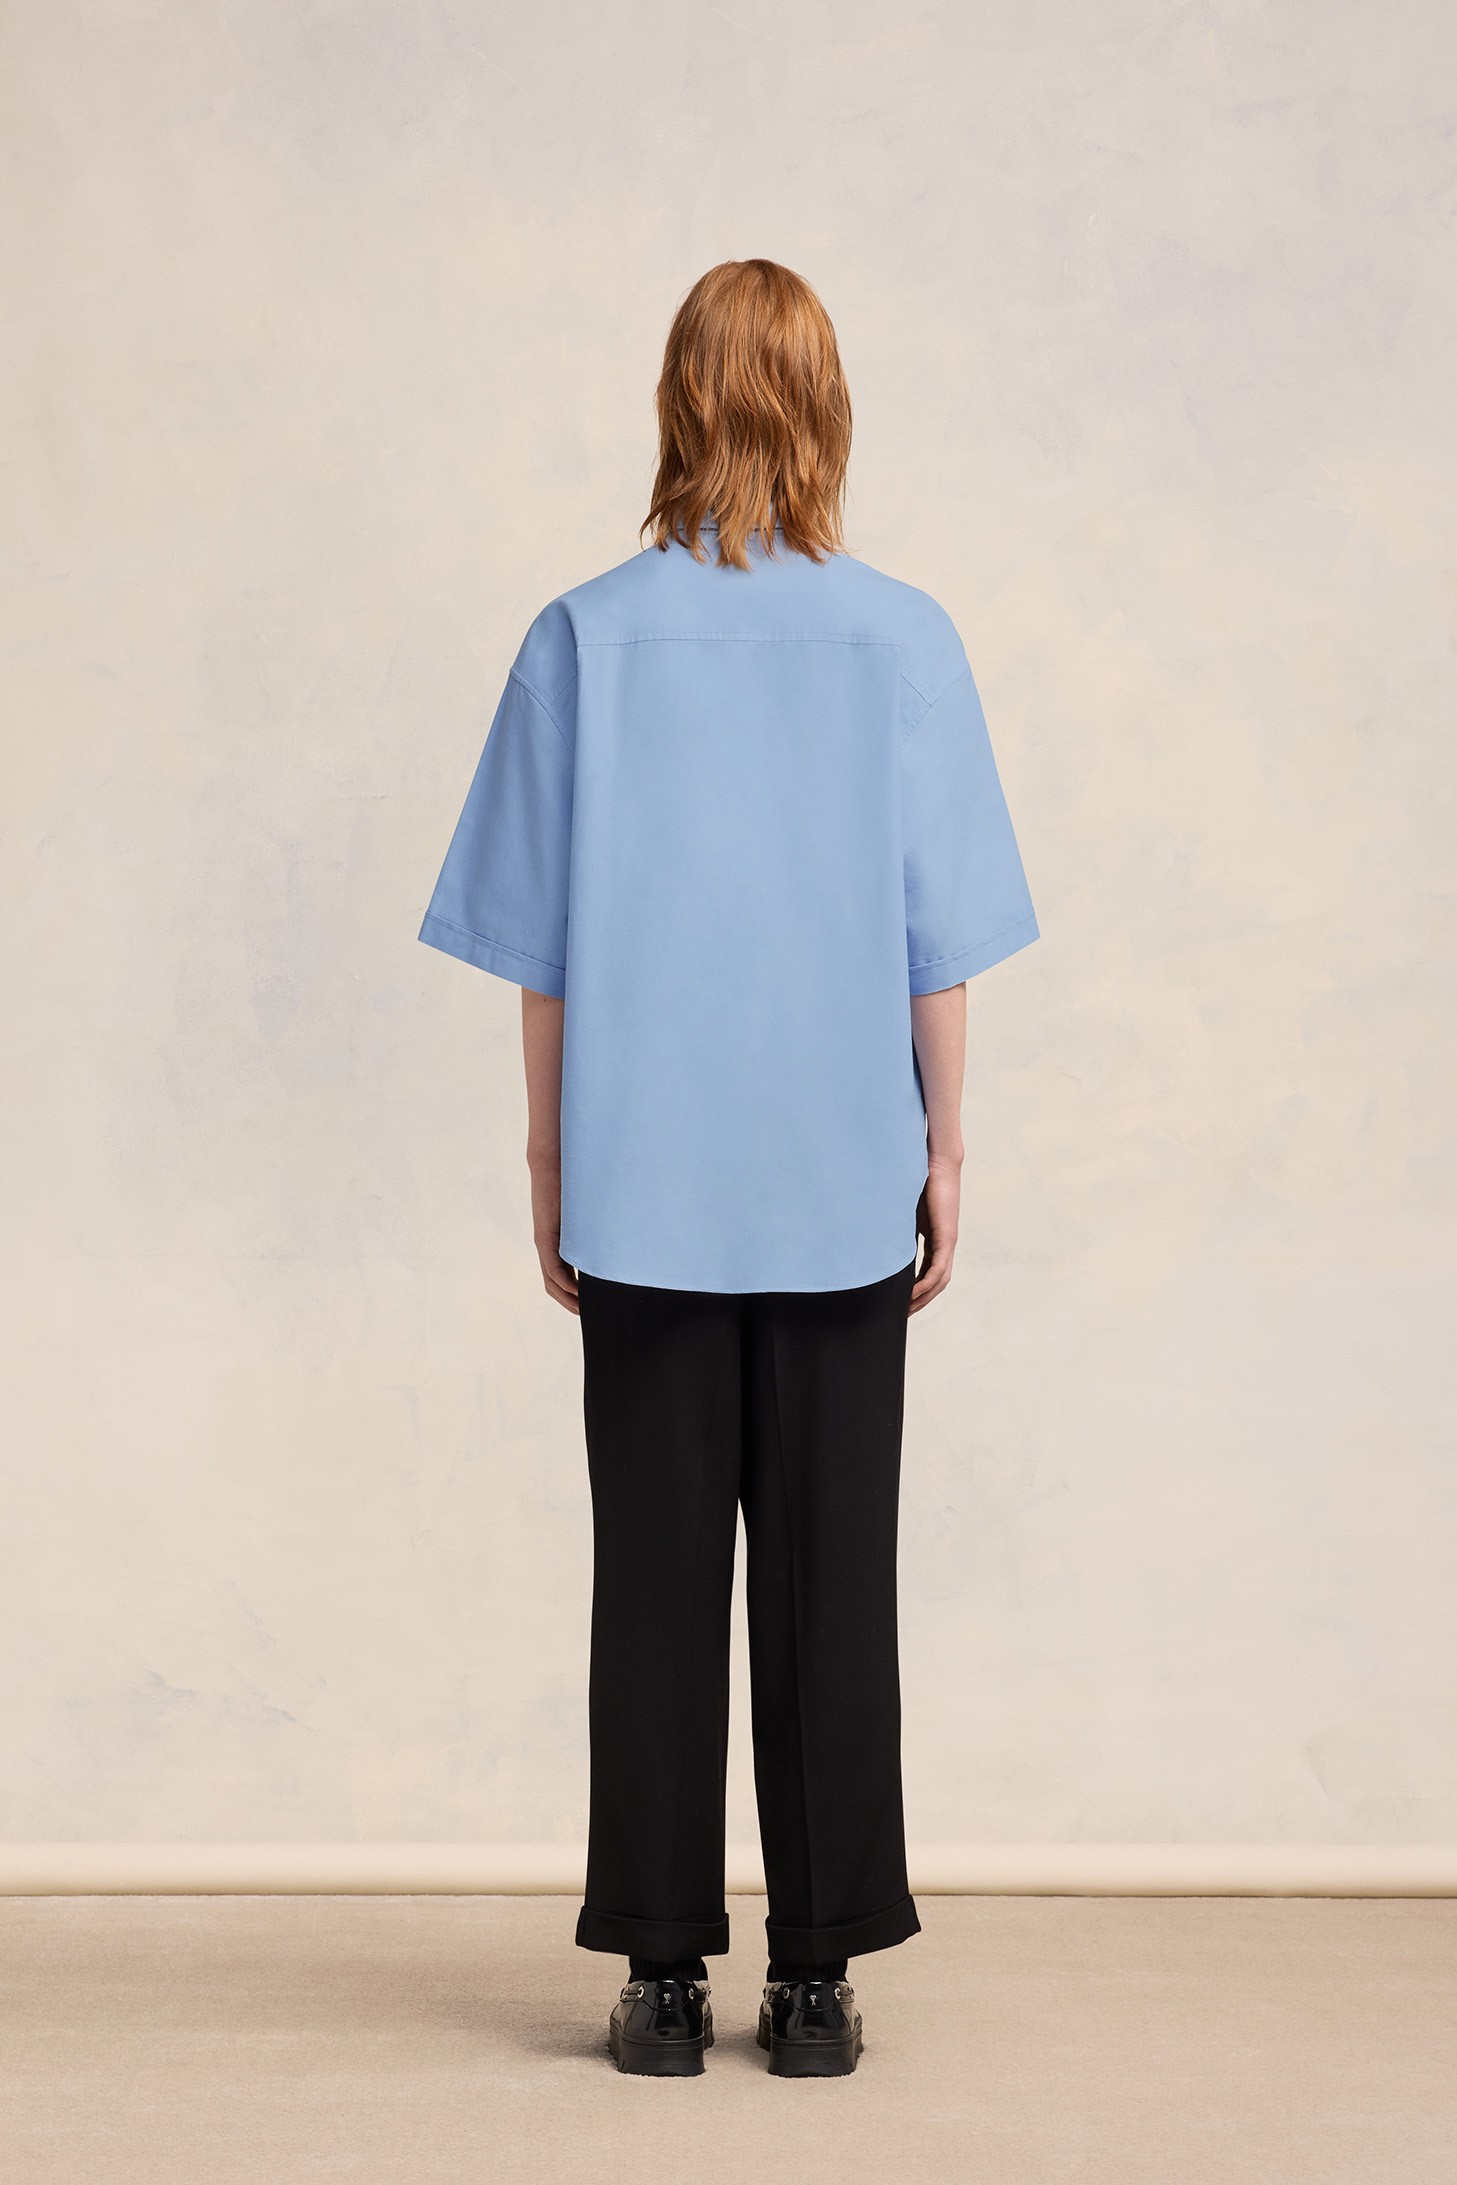 AMI PARIS de Coeur Boxy Fit Short Sleeve Shirt in Cashmere Blue XL